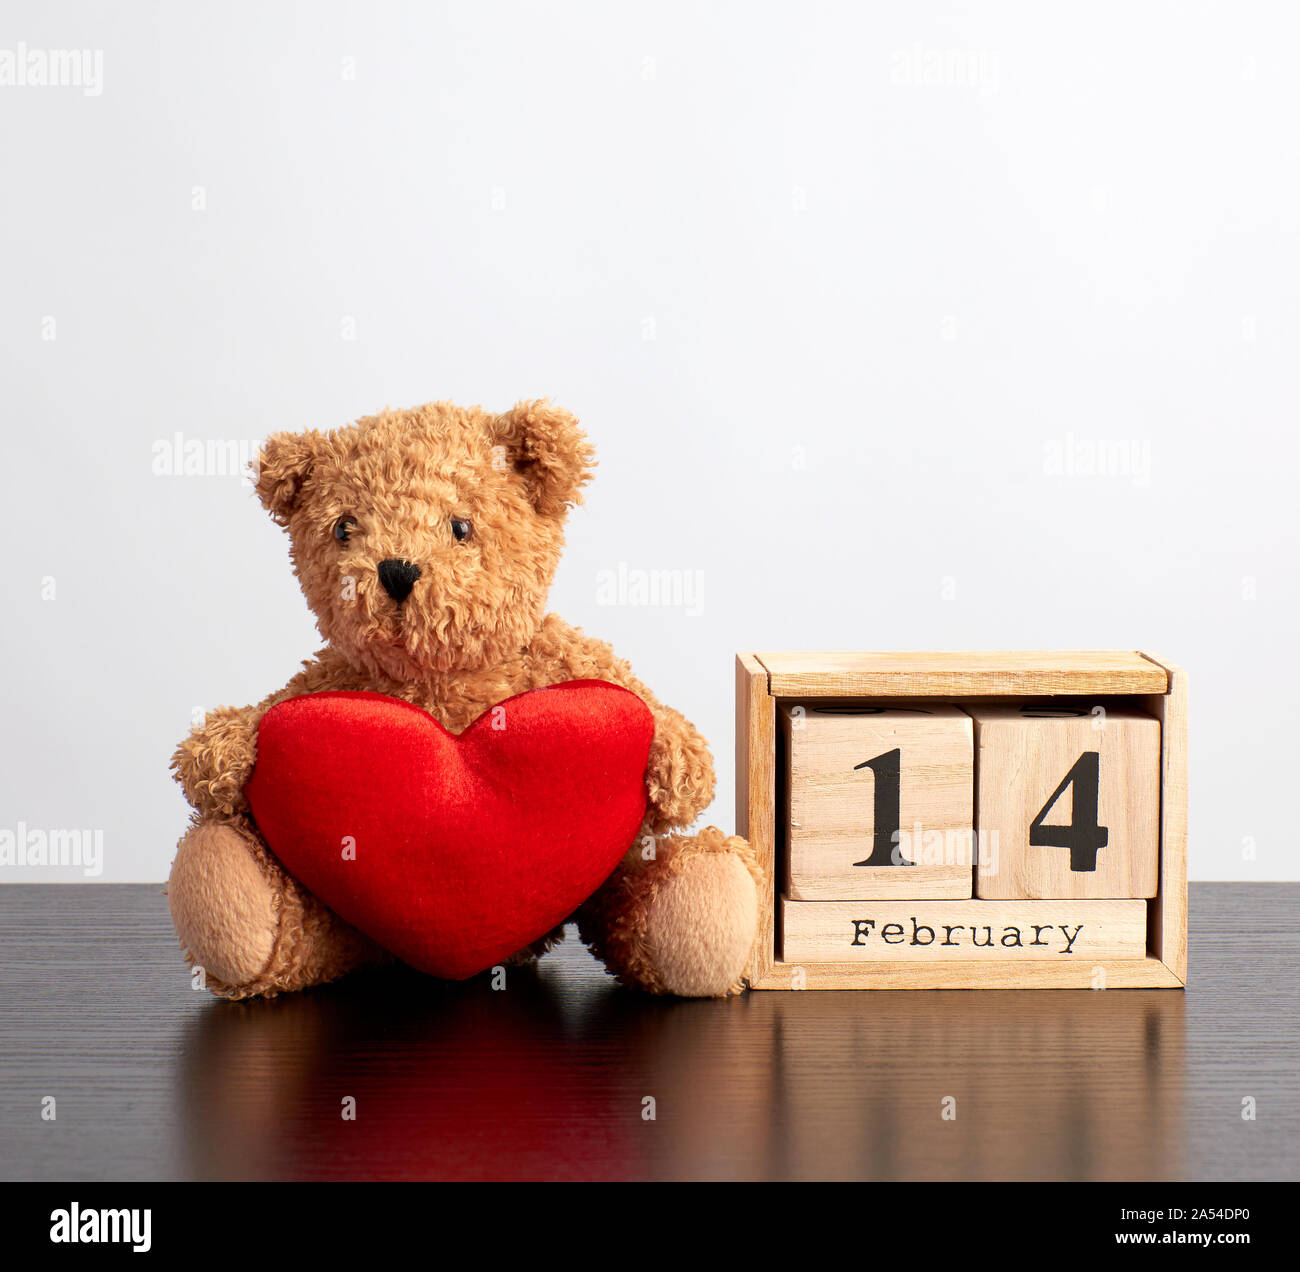 Holz- Kalender der Würfel mit dem Datum des 14. Februar und einem braunen  Teddybär auf einem Schwarzen Tisch, Valentinstag Feier Stockfotografie -  Alamy